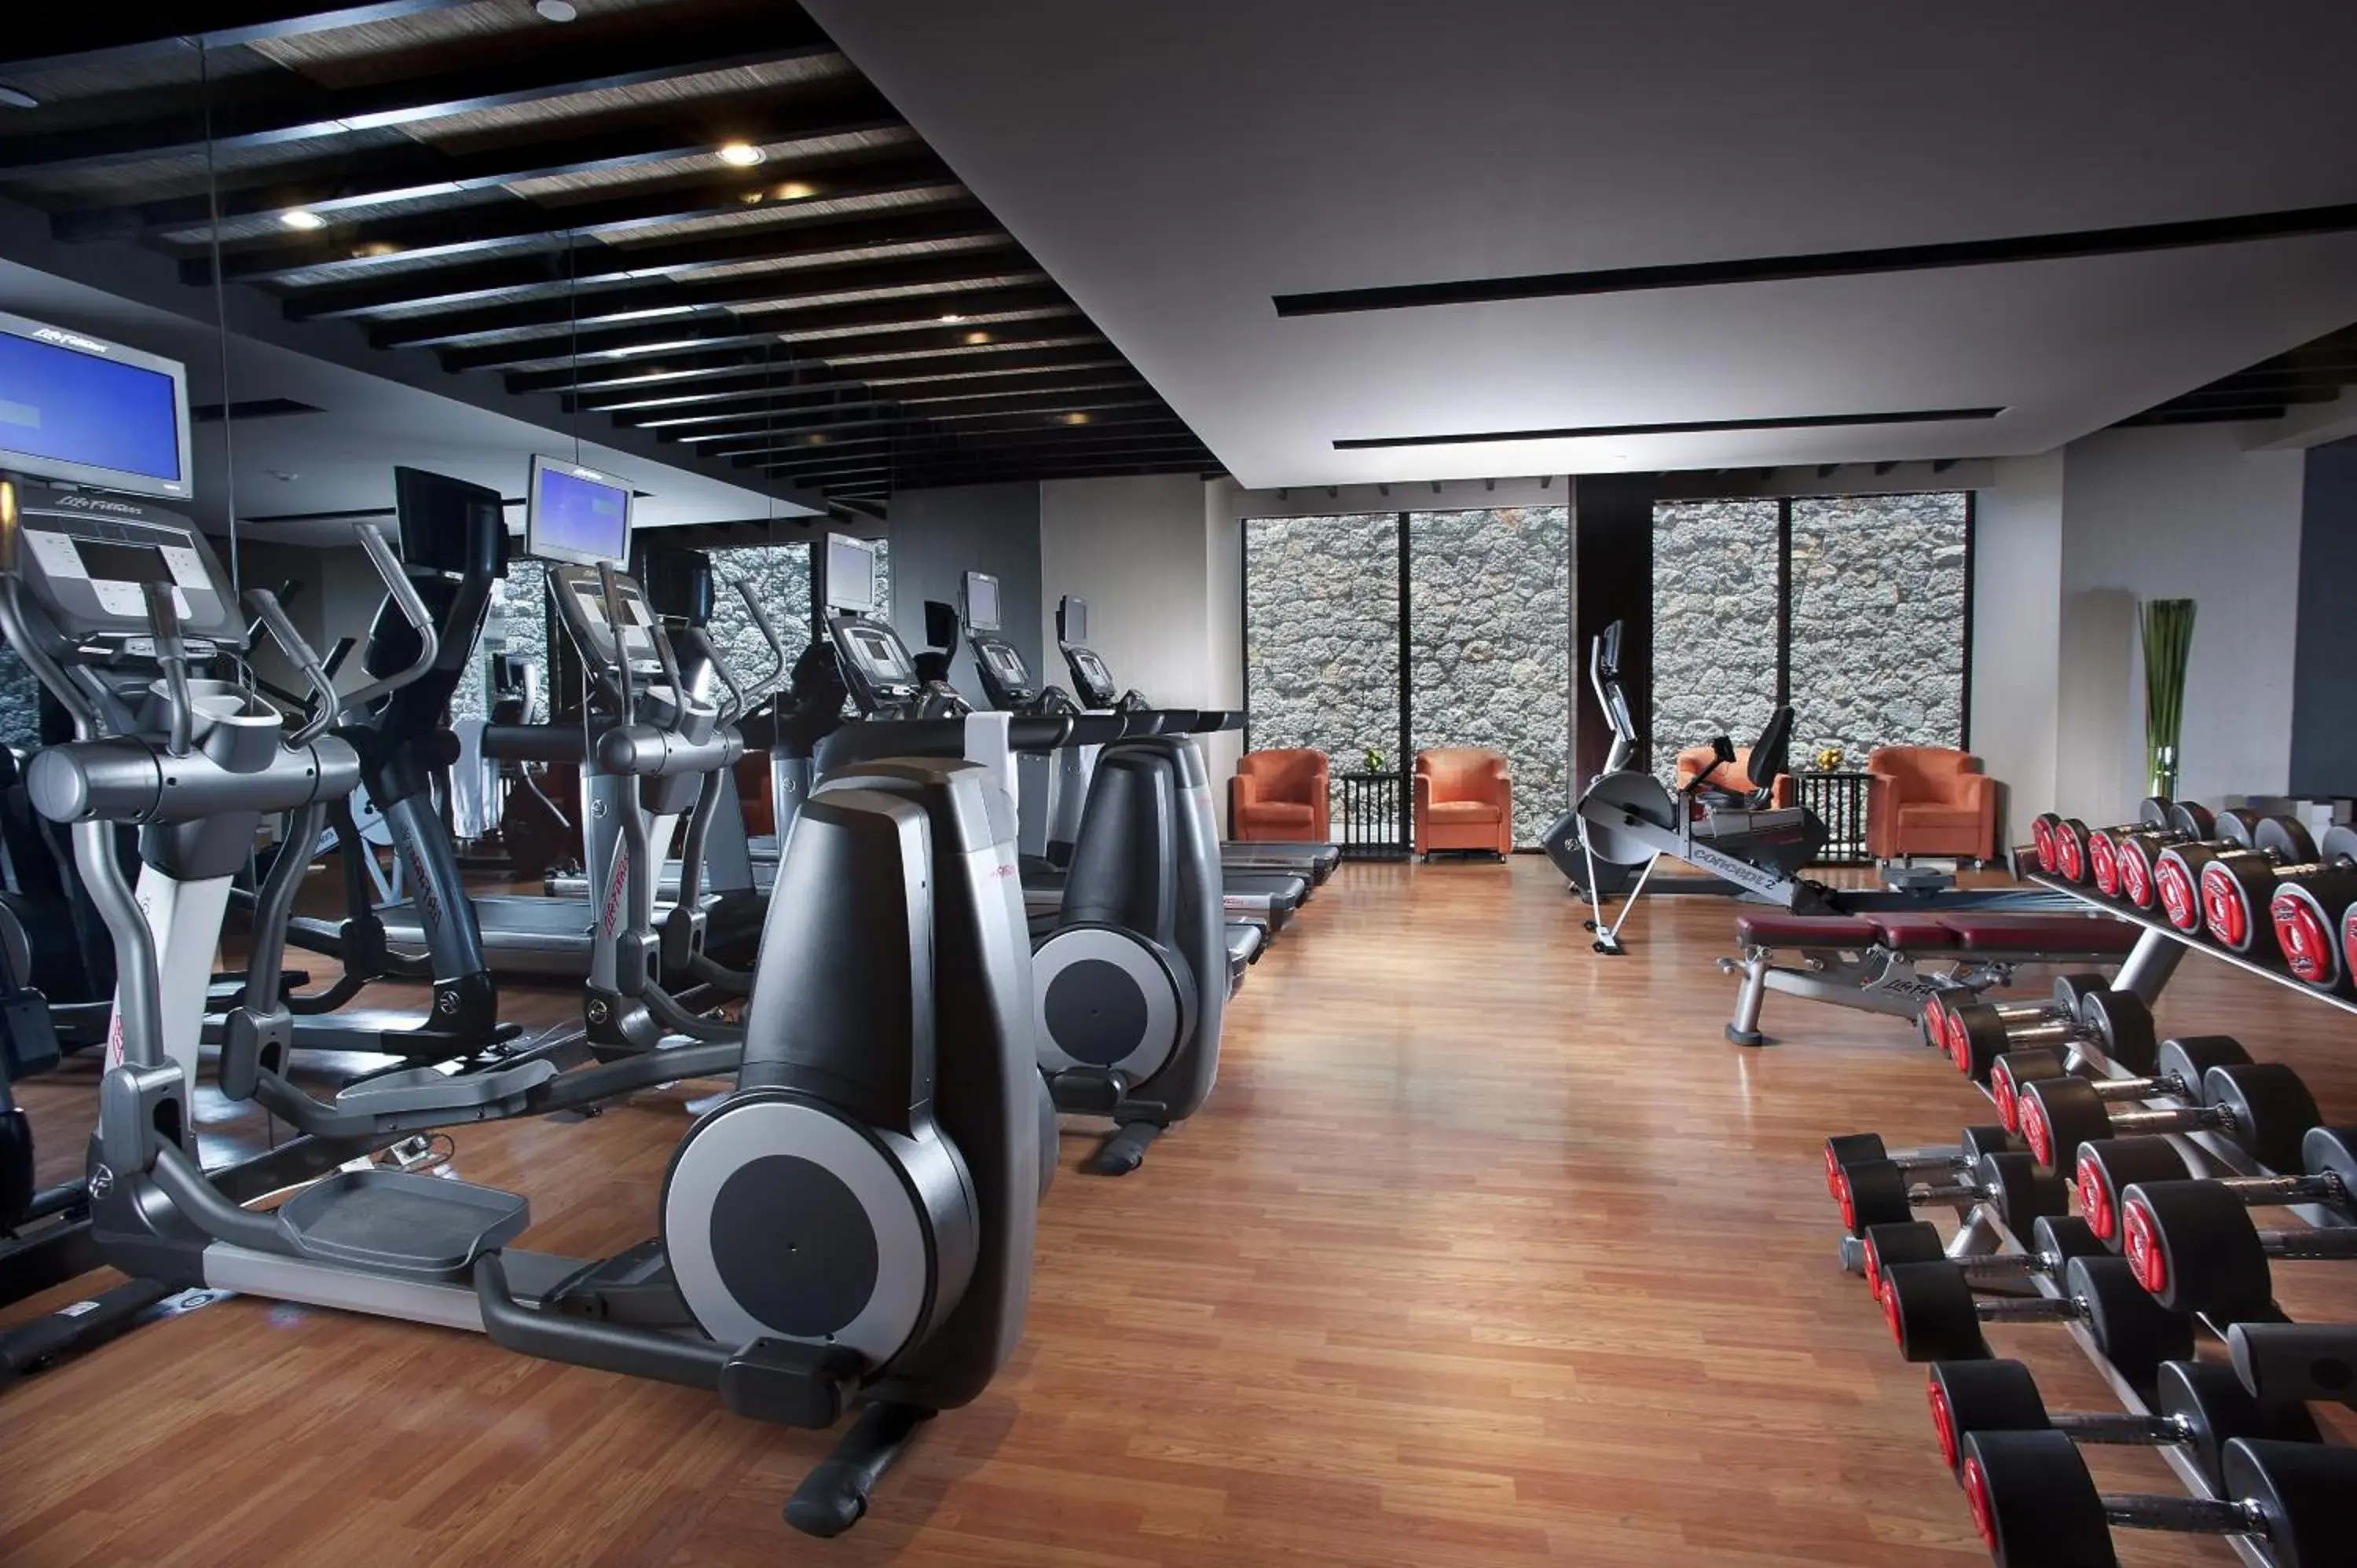 Fitness centre/facilities, Fitness Center/Facilities in Pullman Lijiang Resort & Spa